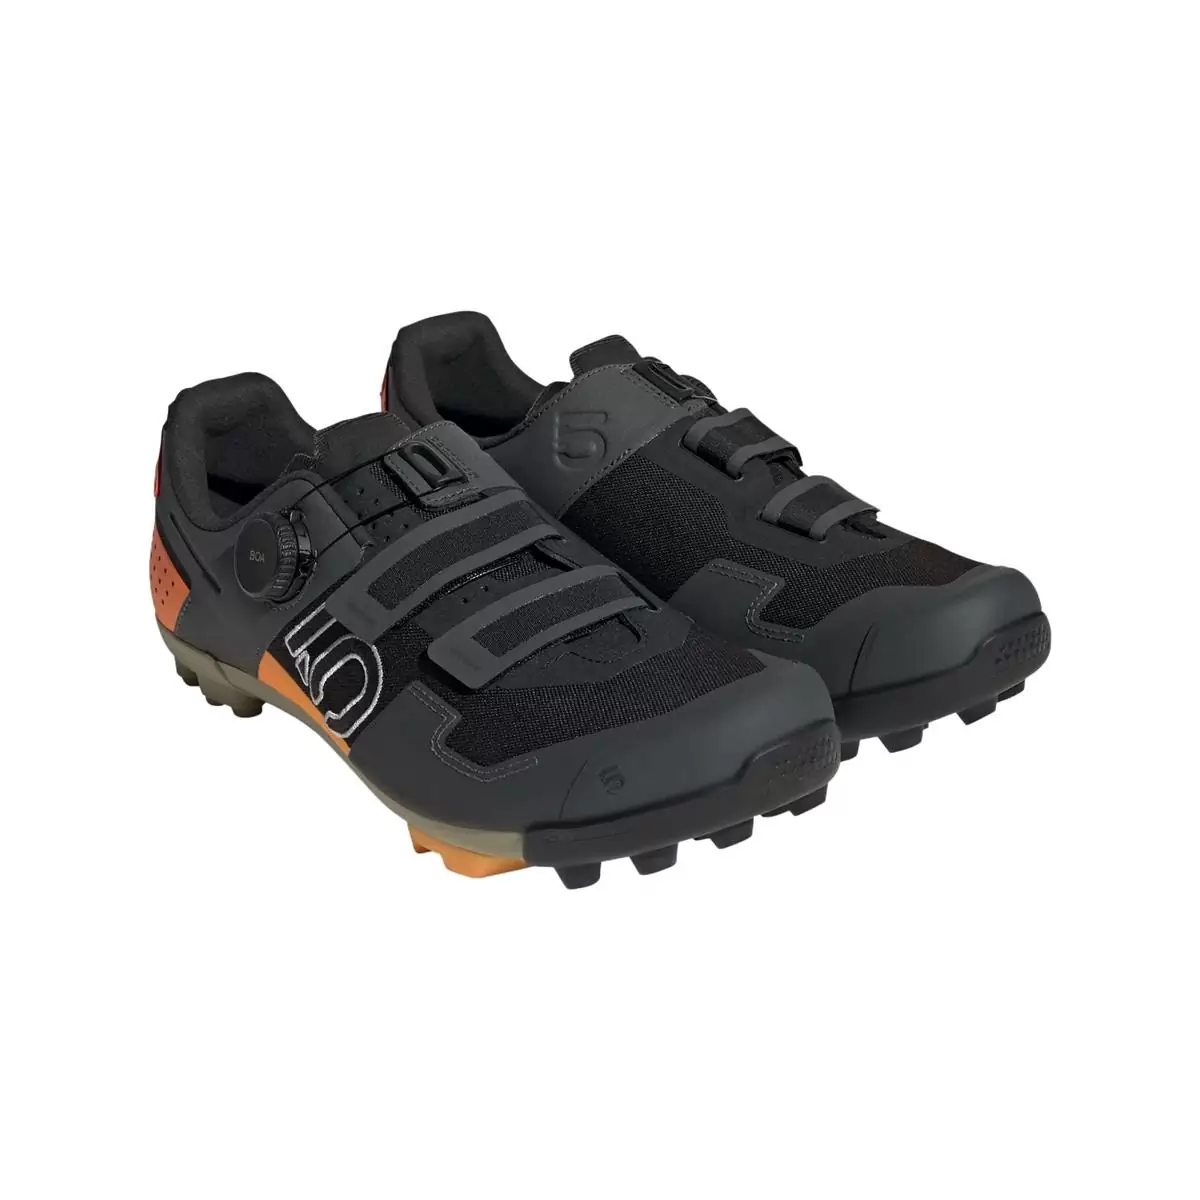 Clip 5.10 Kestrel Boa MTB Shoes Black/Orange Size 43 #1